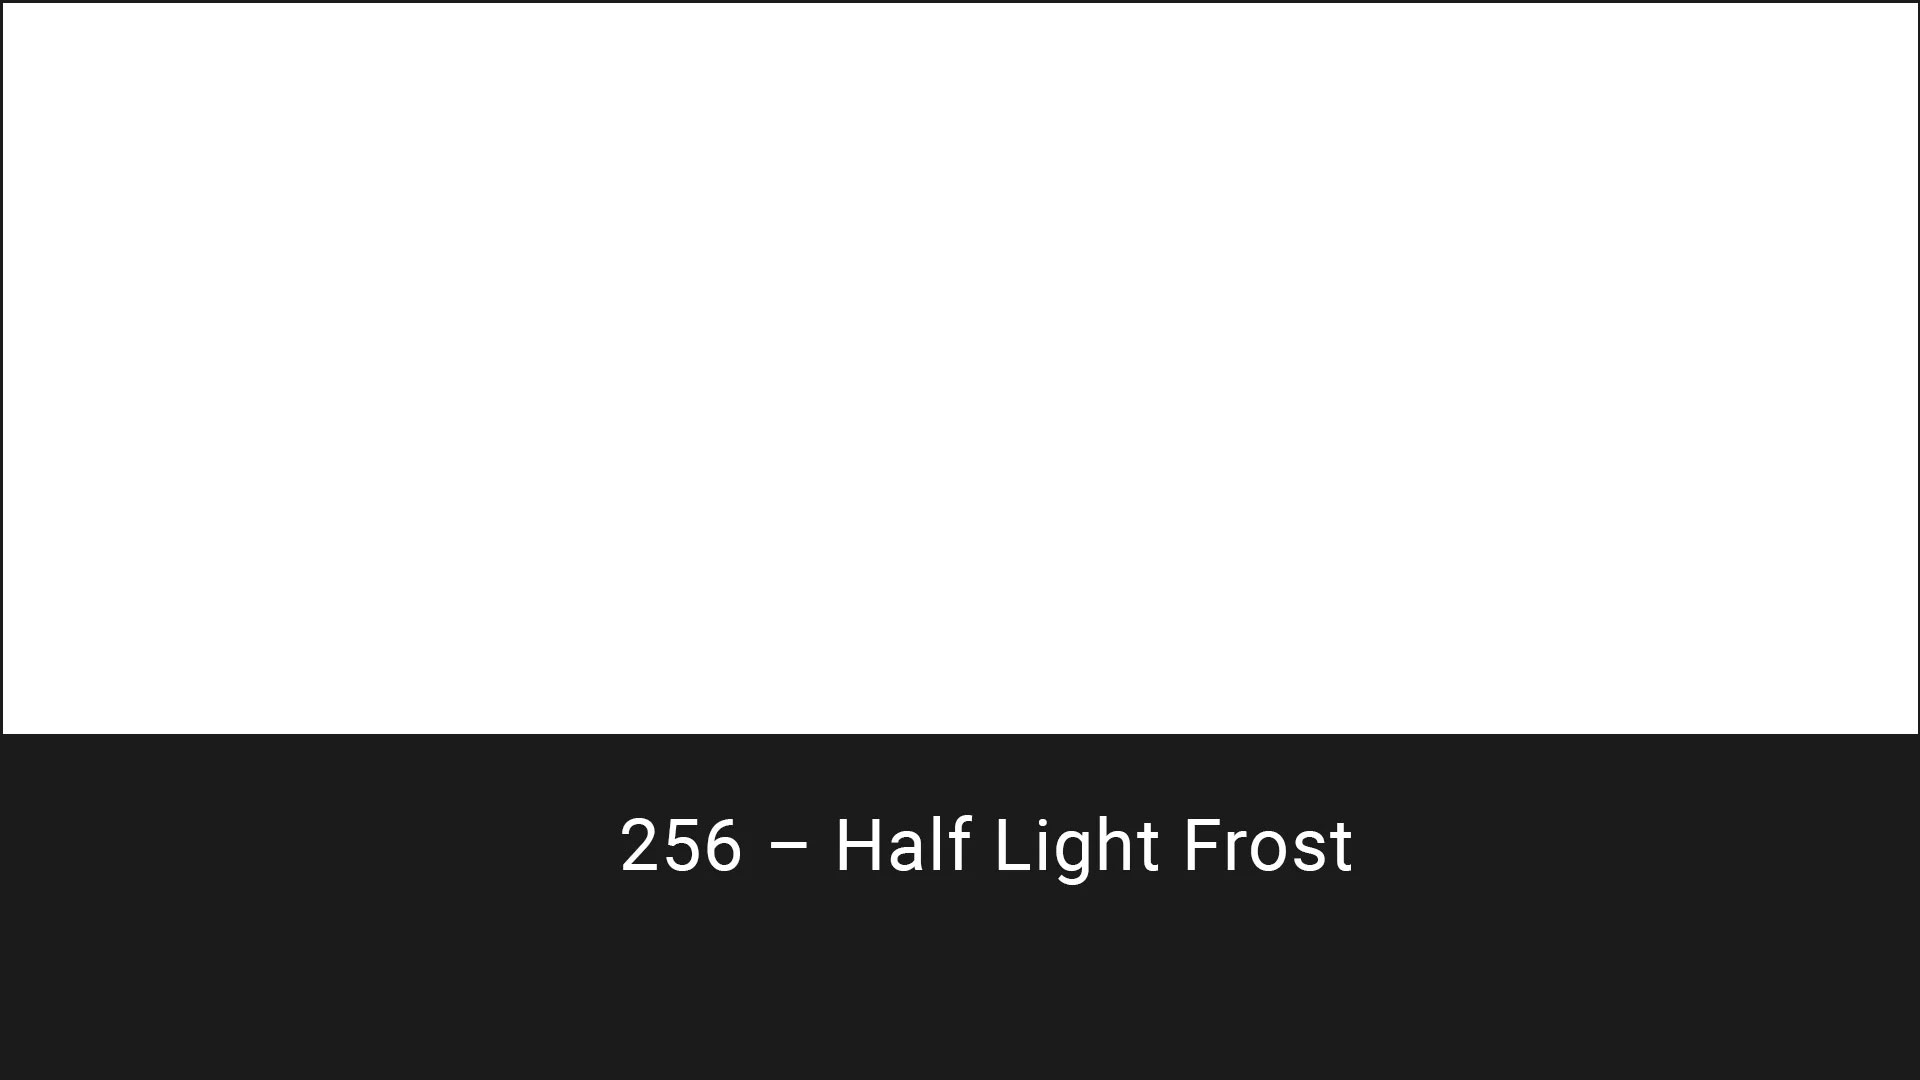 Cotech filters 256 Half Light Frost